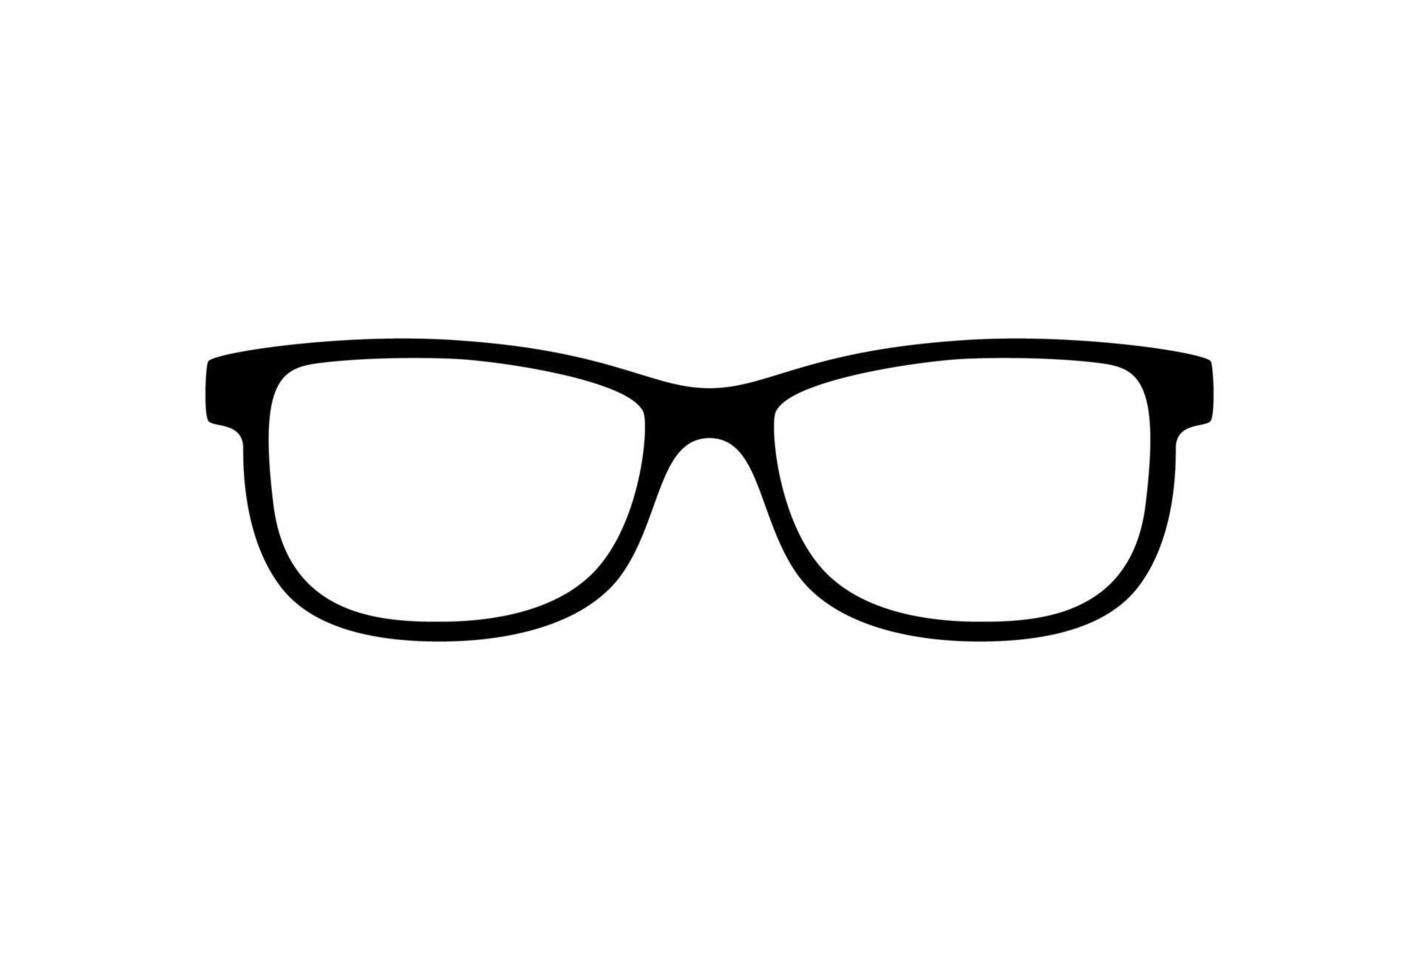 Brille isoliert auf weißem Hintergrund vektor